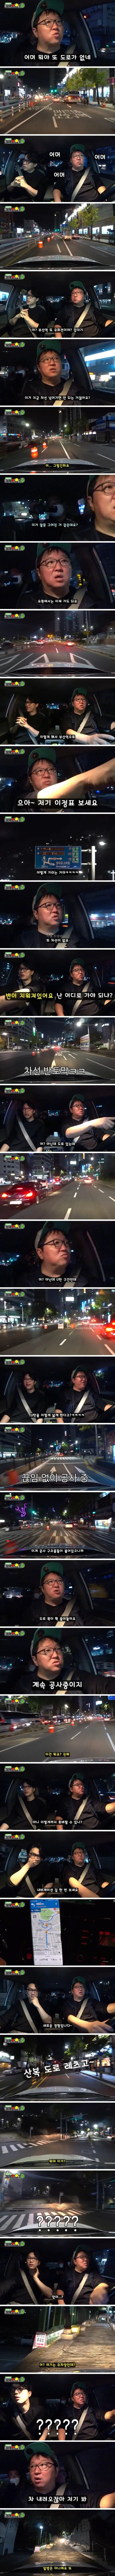 어서와, 부산에서 운전은 처음이지? (ft. 정형돈).jpg | mbong.kr 엠봉